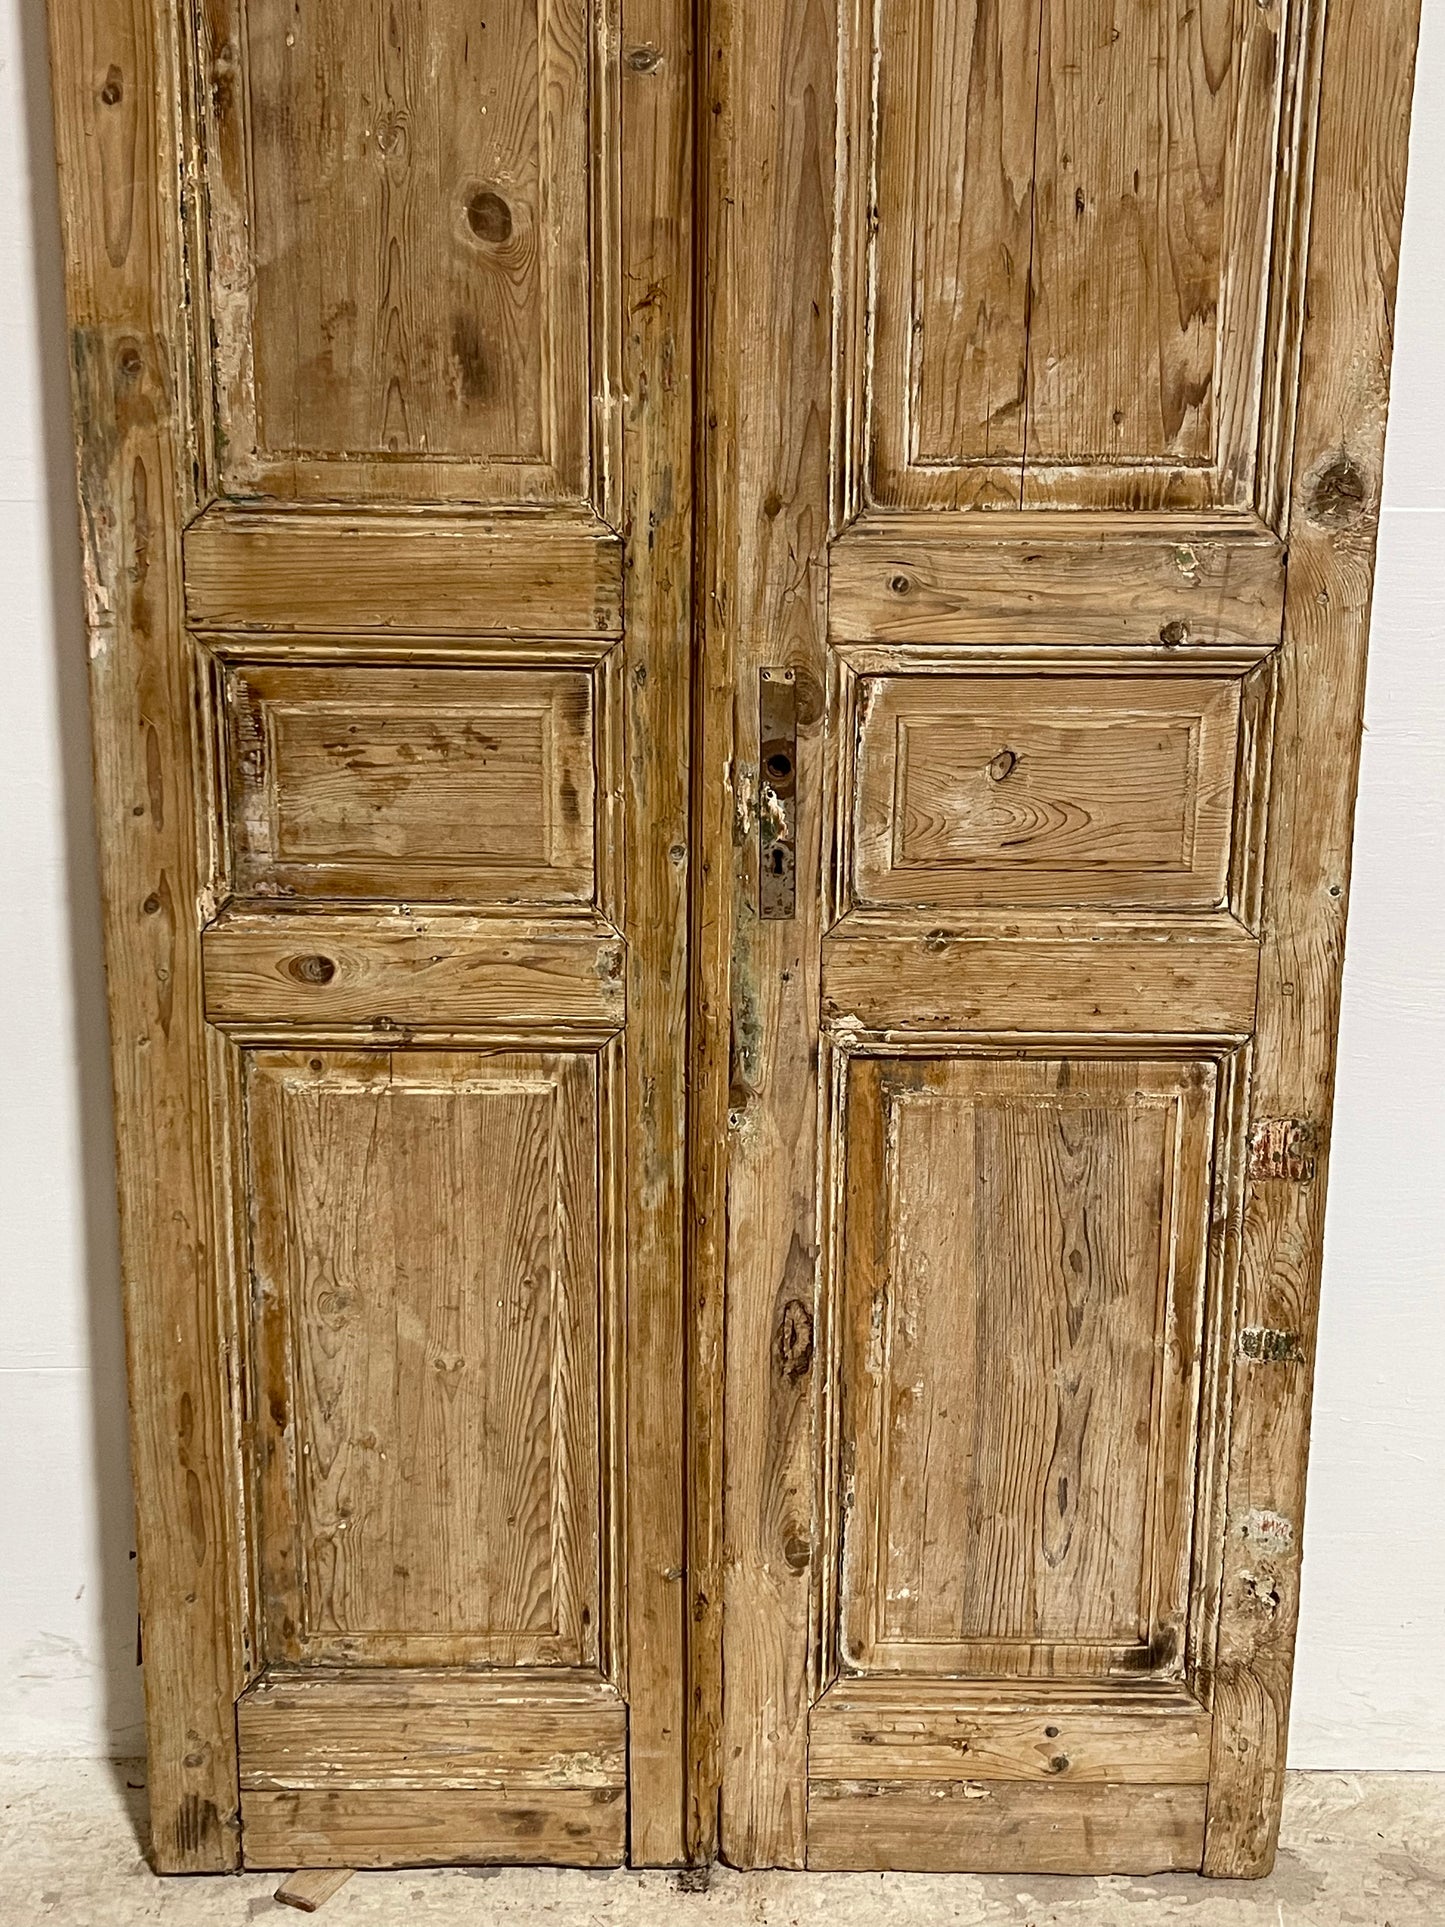 Antique French panel Doors (93x40.25) J631